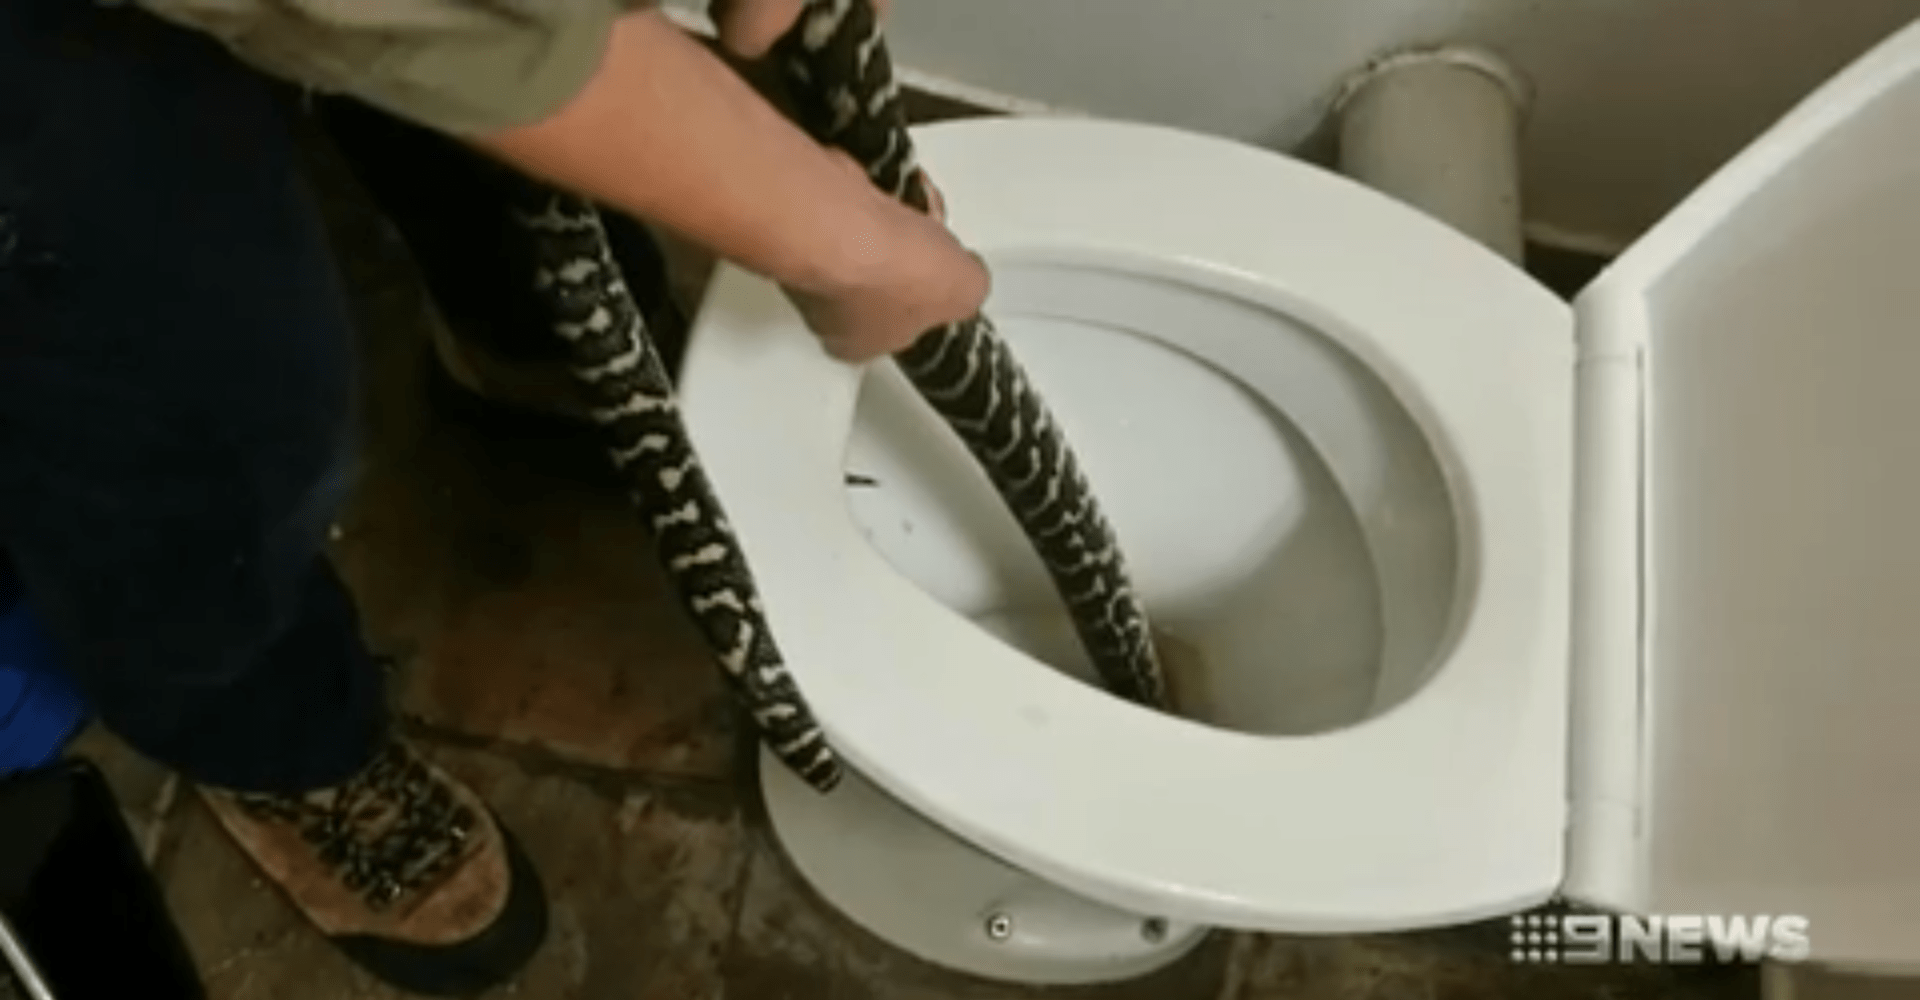 odchyt krajty ze záchodové mísy